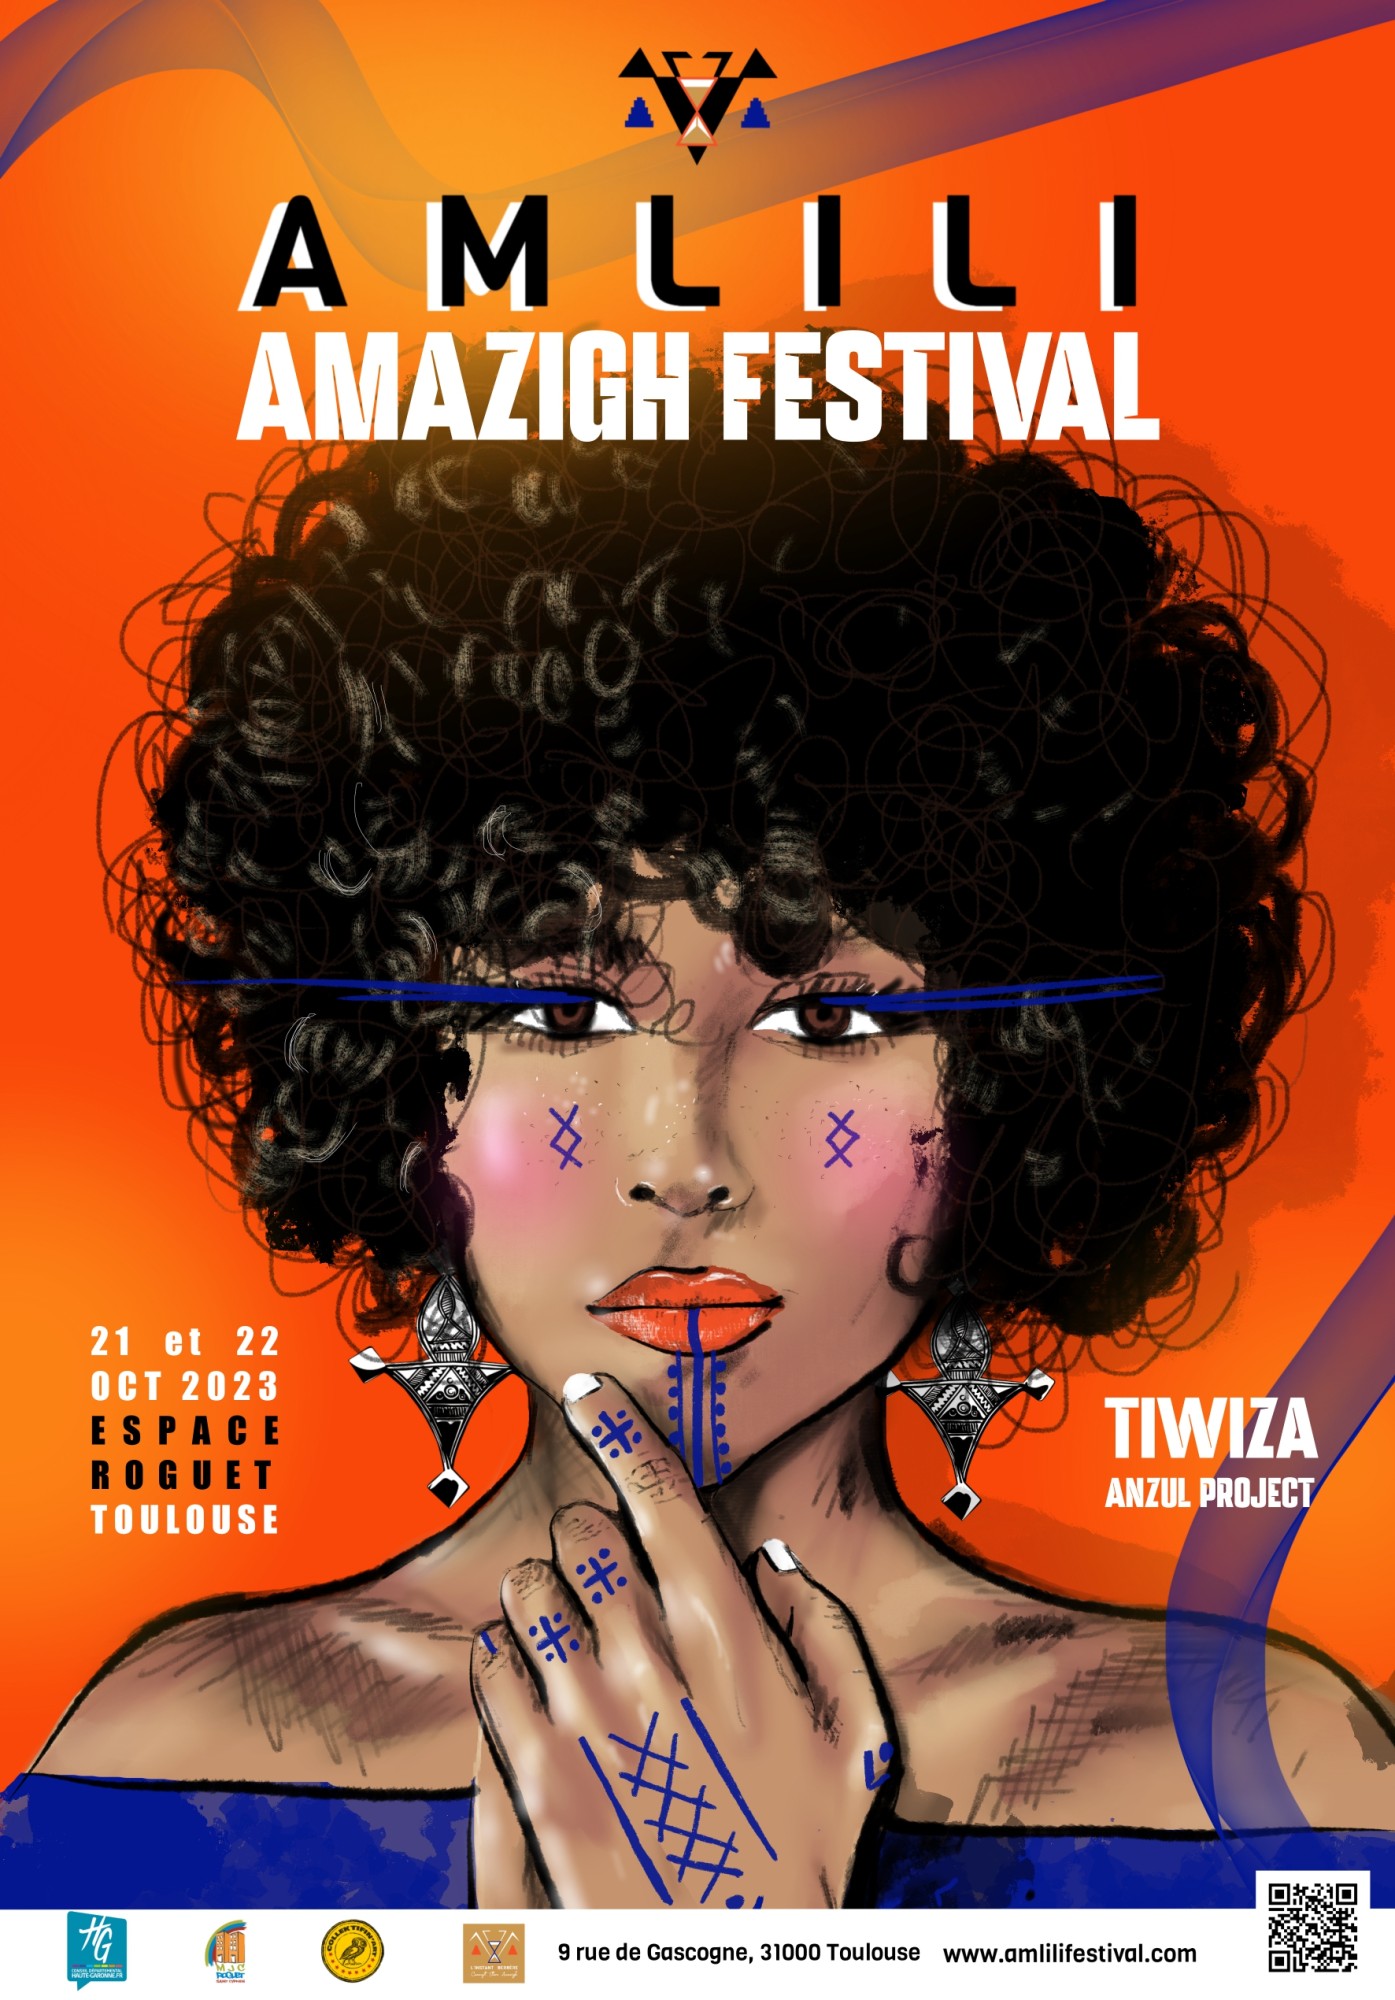 Toulouse - Amlili Amazigh Festival fera rayonner la culture amazighe dans la Ville rose les 21 et 22 octobre